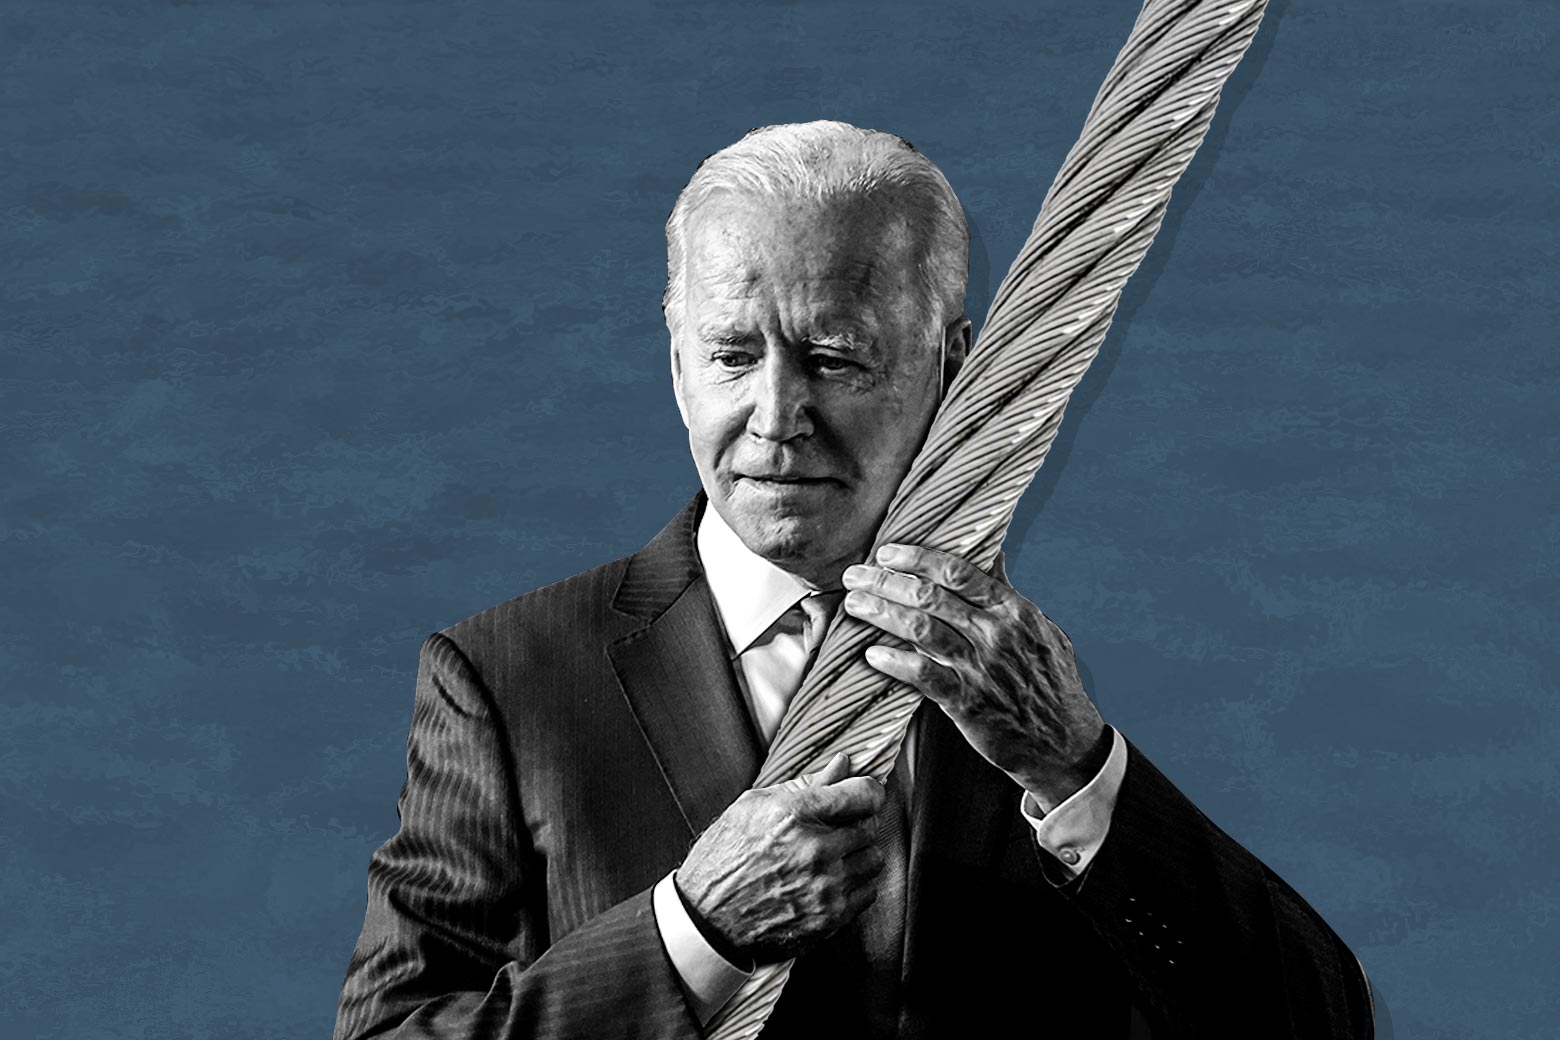 Joe Biden hugs a giant cable.